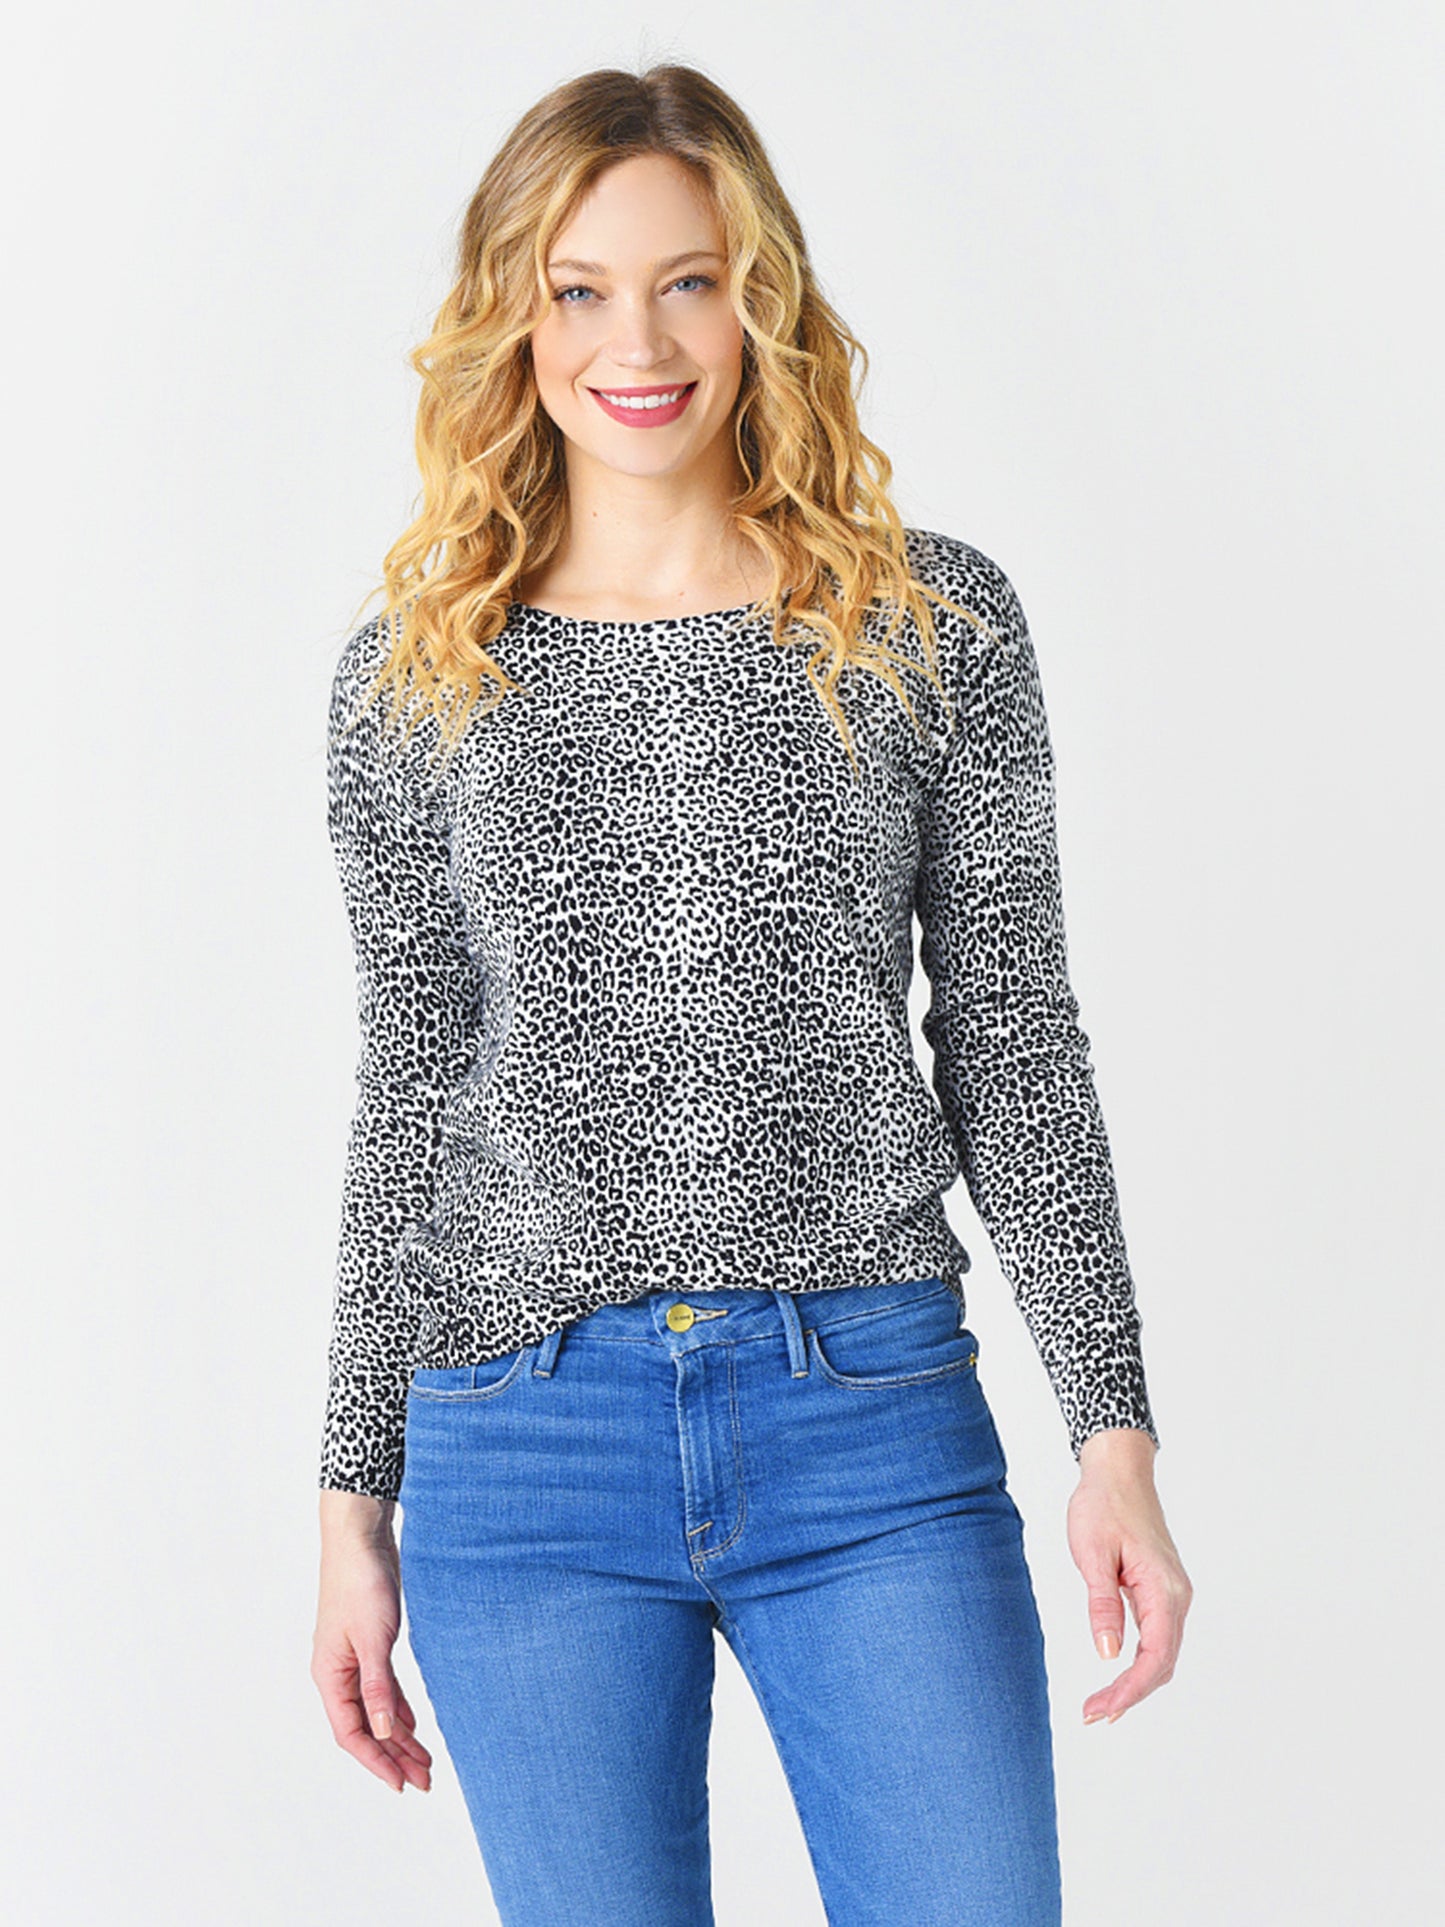 Project J Women's Leopard Sweater